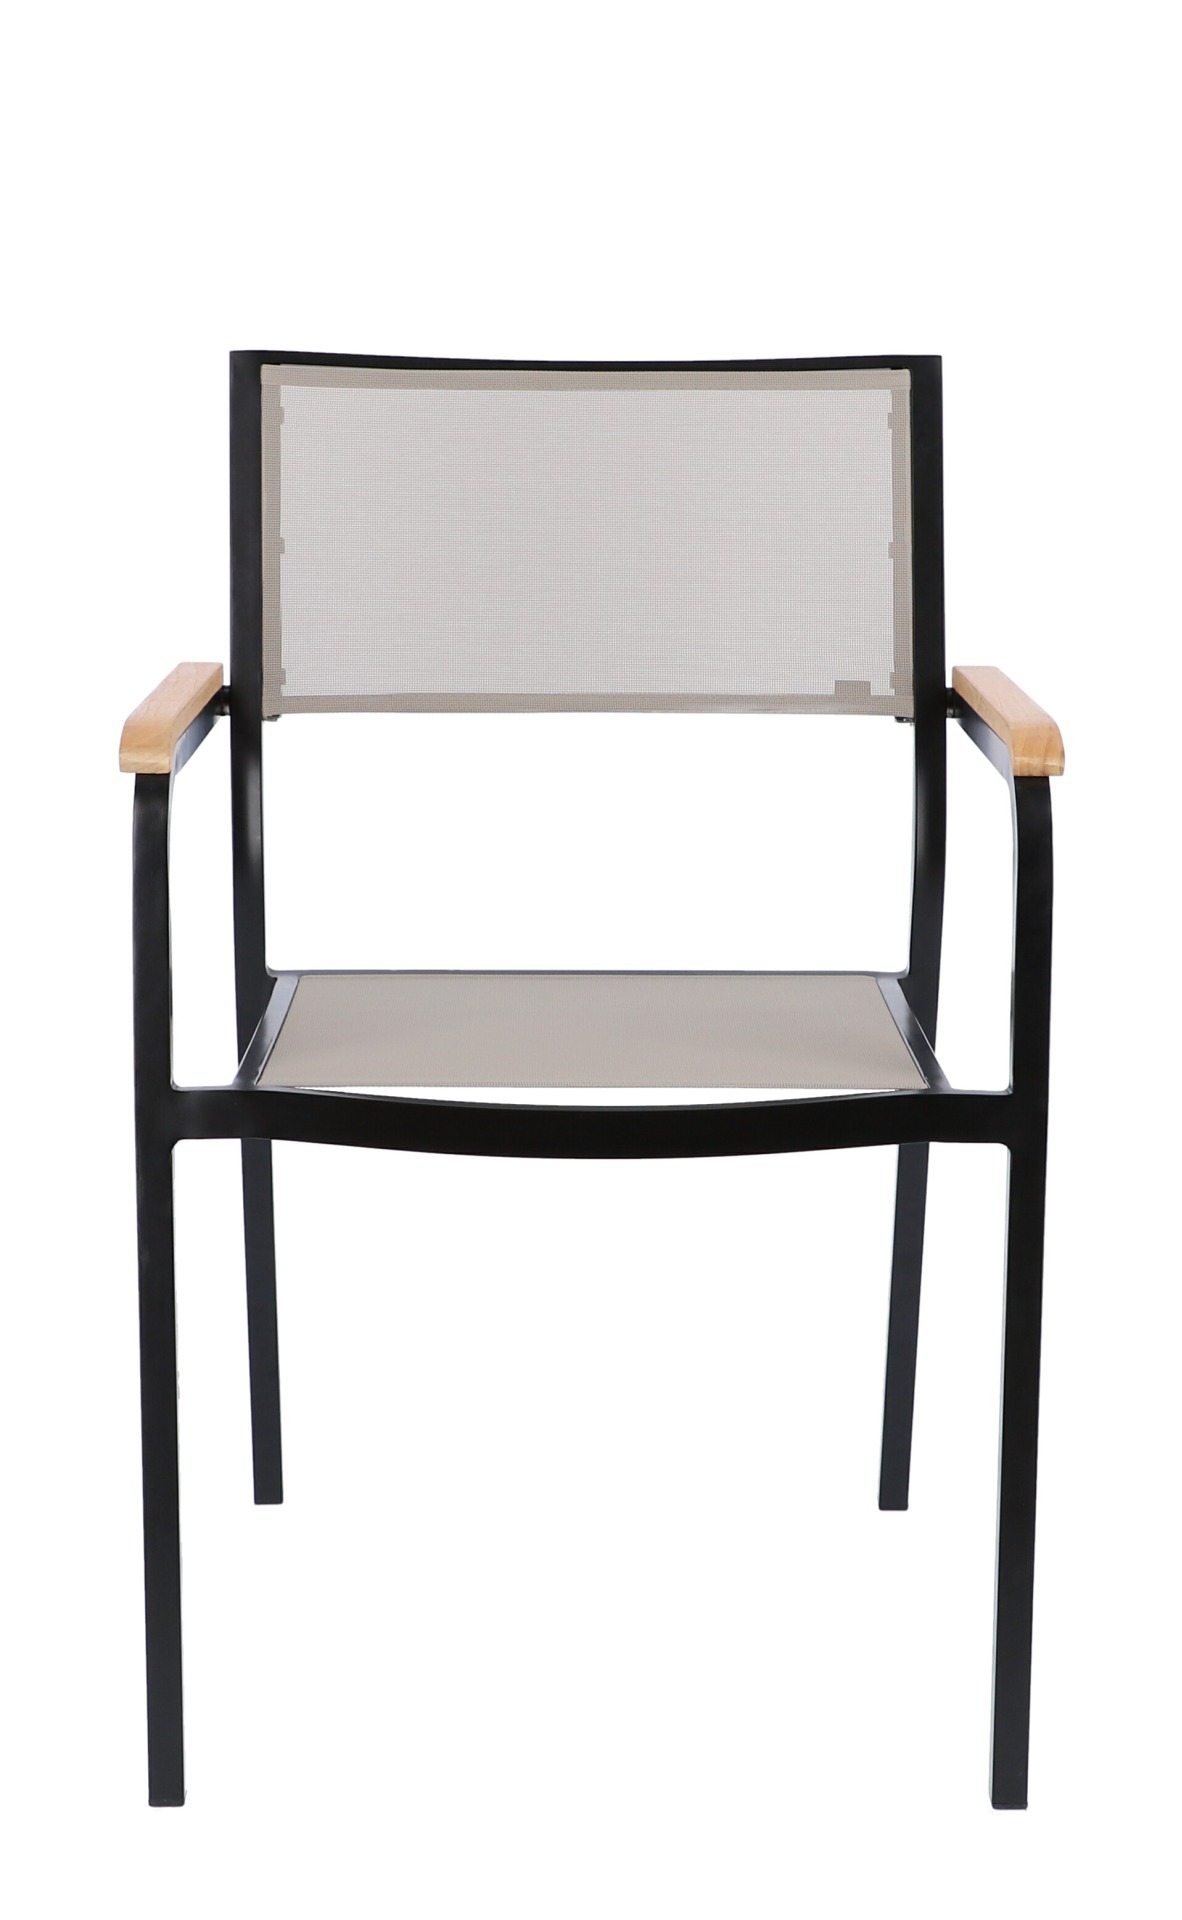 Der Stapelsessel Lux besitzt ein modernes Design. Hergestellt wurde der Sessel aus Aluminium von der Marke Jan Kurtz. Der Sessel besitzt die Farbe Schwarz.